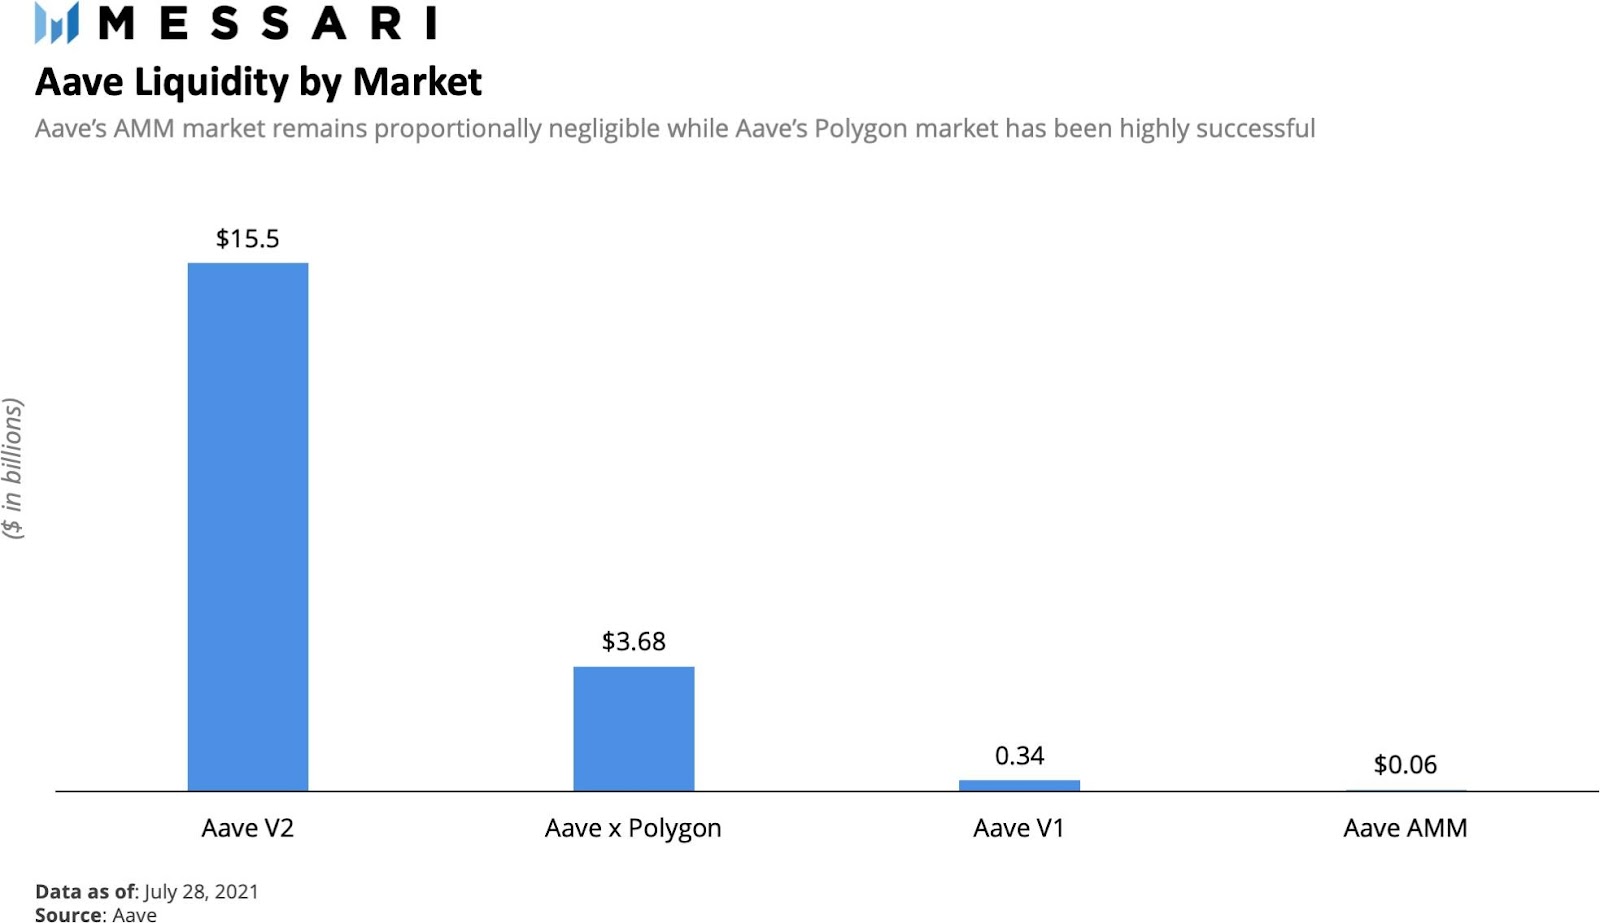 Aave Arc: Cầu nối Defi và Nhu cầu đầu tư từ các tổ chức tài chính